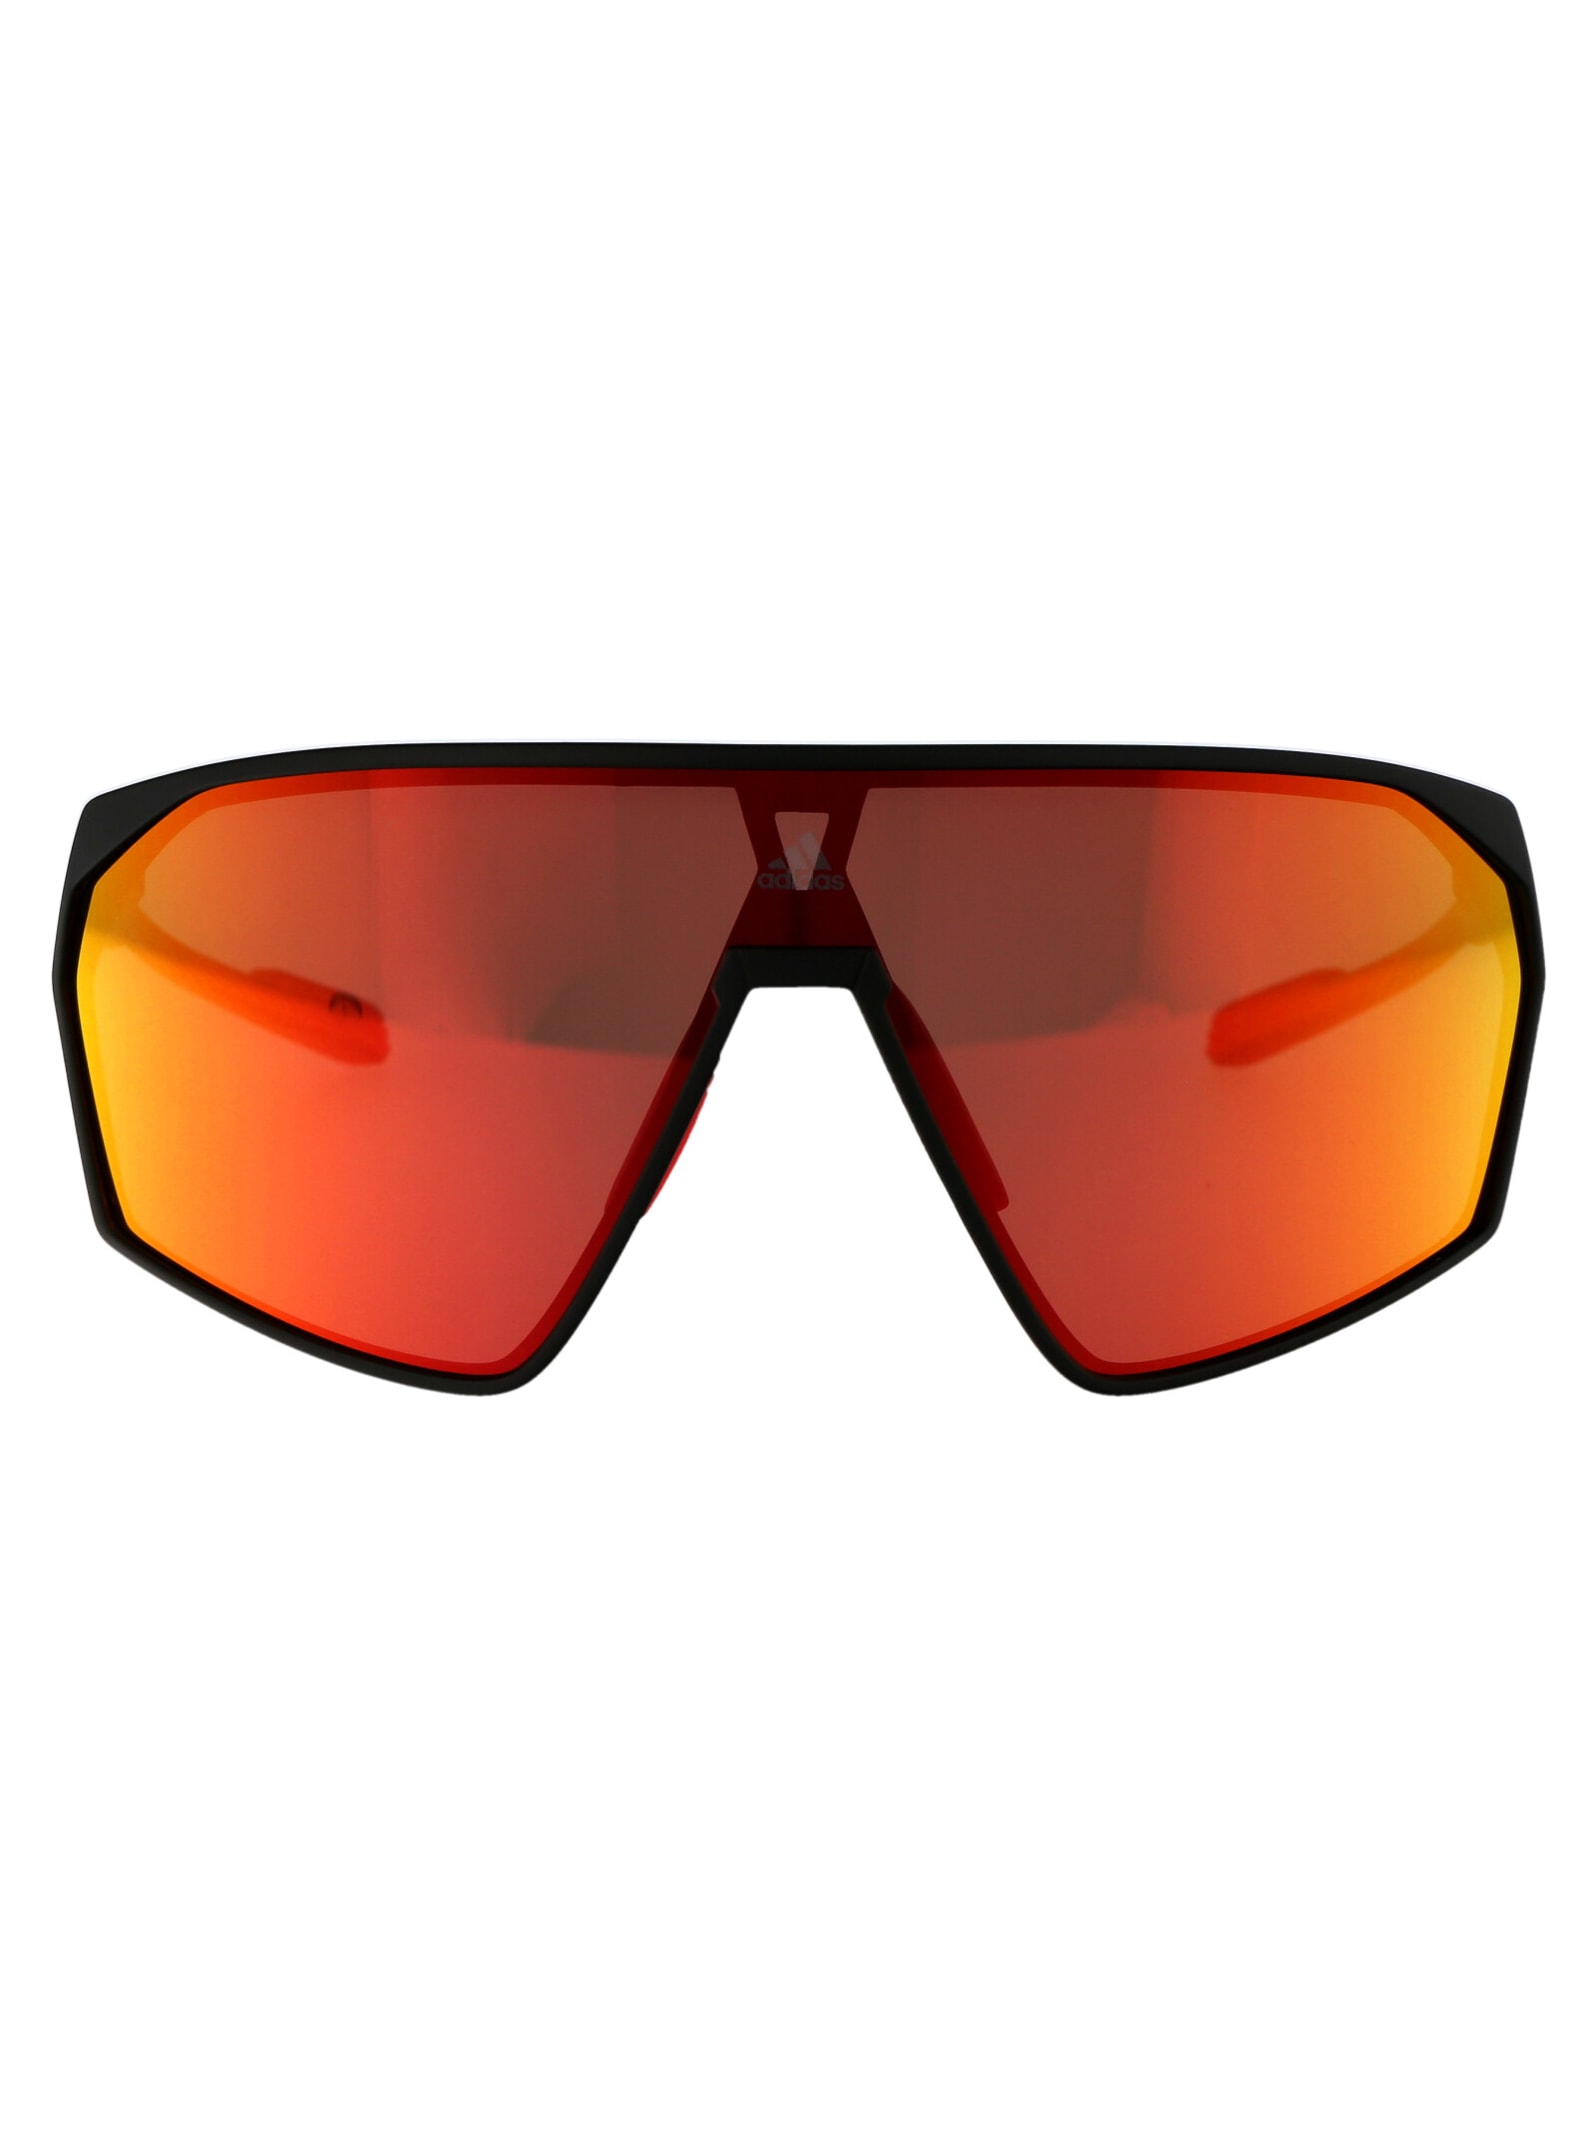 Adidas Originals Prfm Shield Sunglasses In 02l Nero Opaco/roviex Specchiato